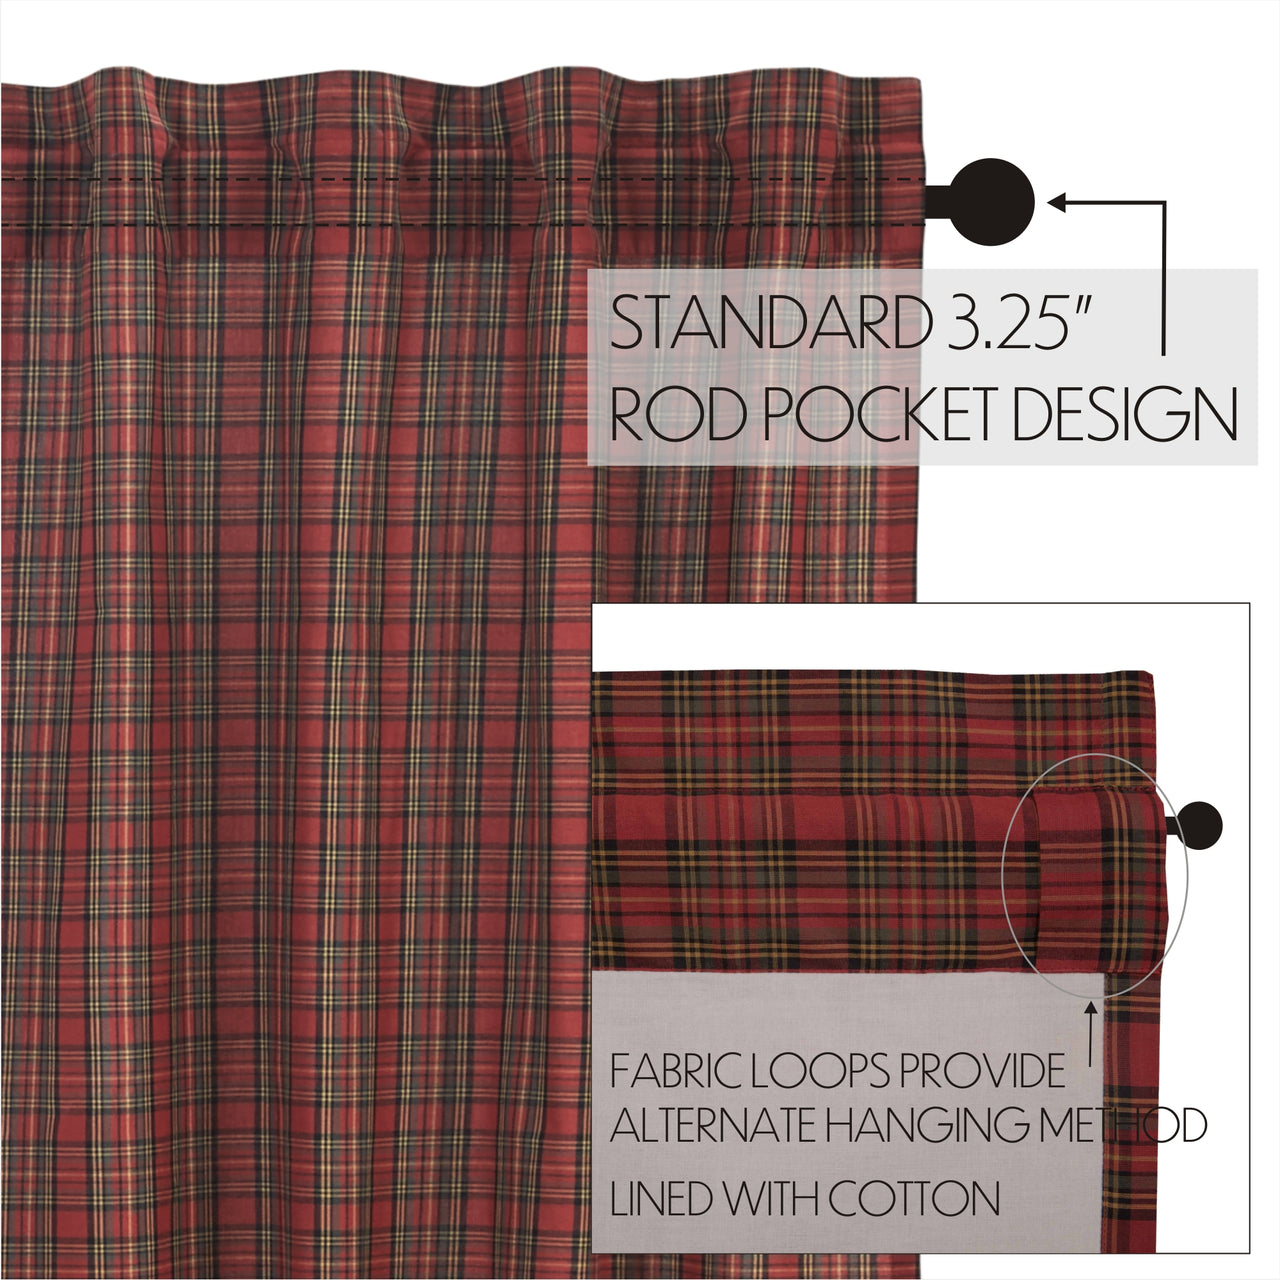 Tartan Red Plaid Tier Curtain Set of 2 L24xW36